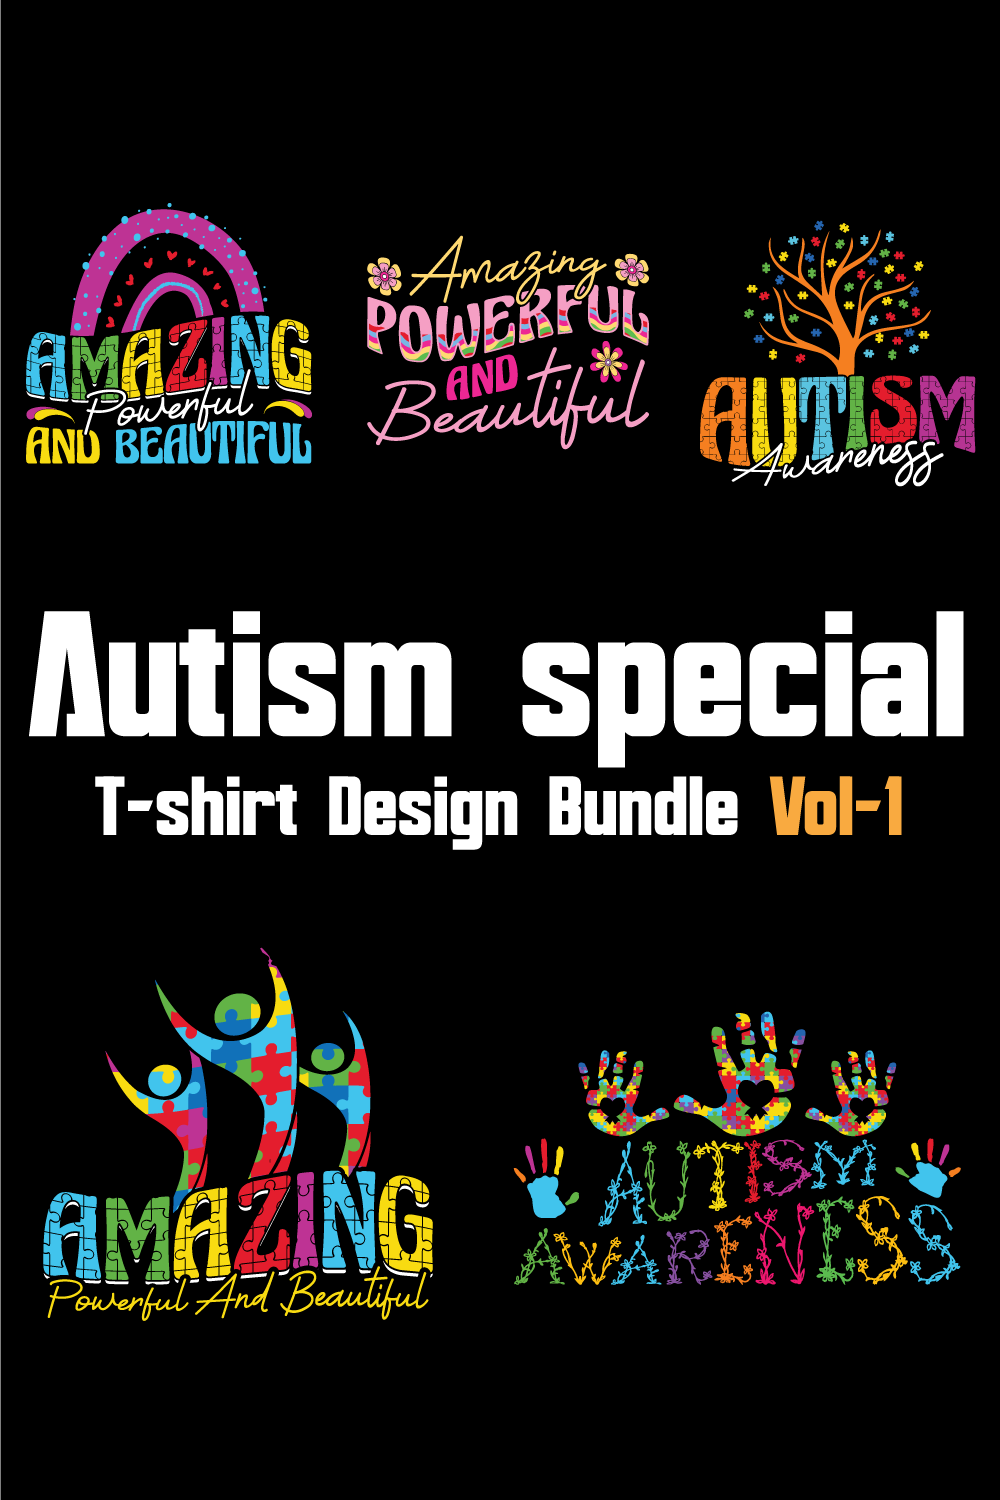 Autism Special T-shirt Design Bundle Vol-1 pinterest preview image.